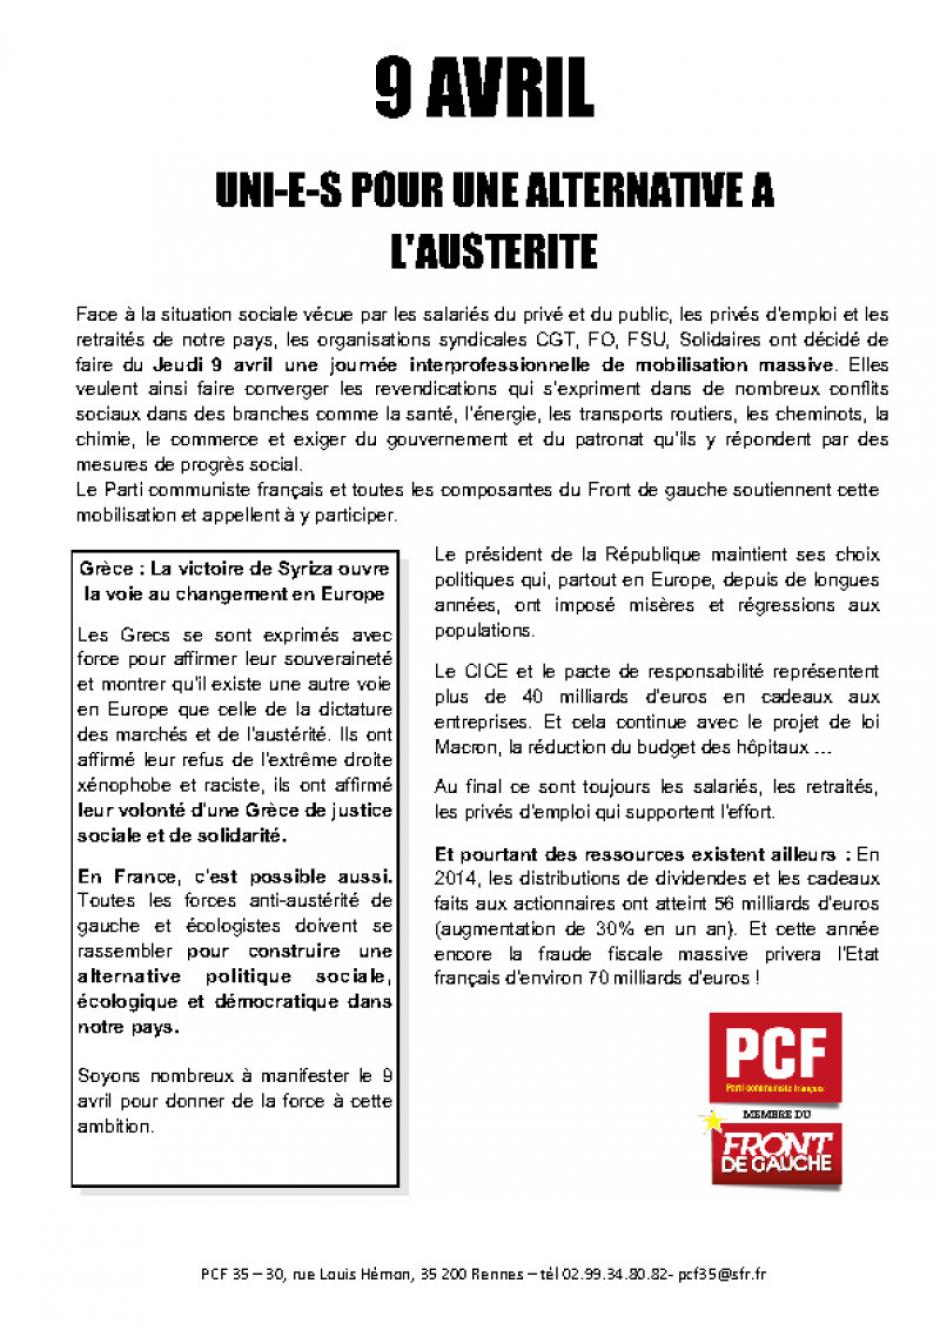 Jeudi 9 avril, journée de grève interprofessionnelle à l'appel de la CGT, FO, FSU et Solidaires